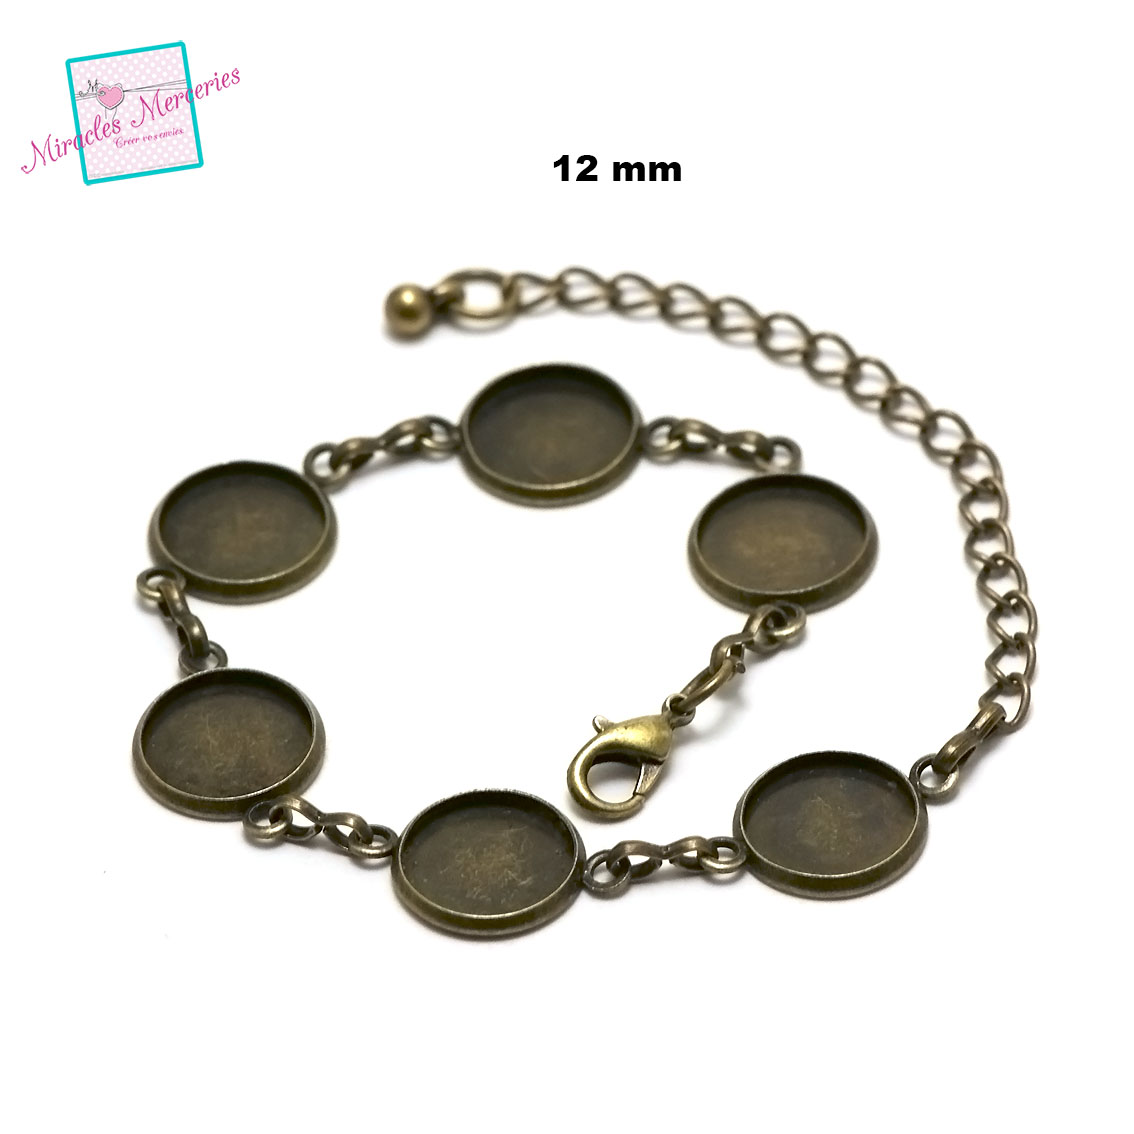 1 bracelet supports cabochon quintuple ronde 12 mm ,bronze